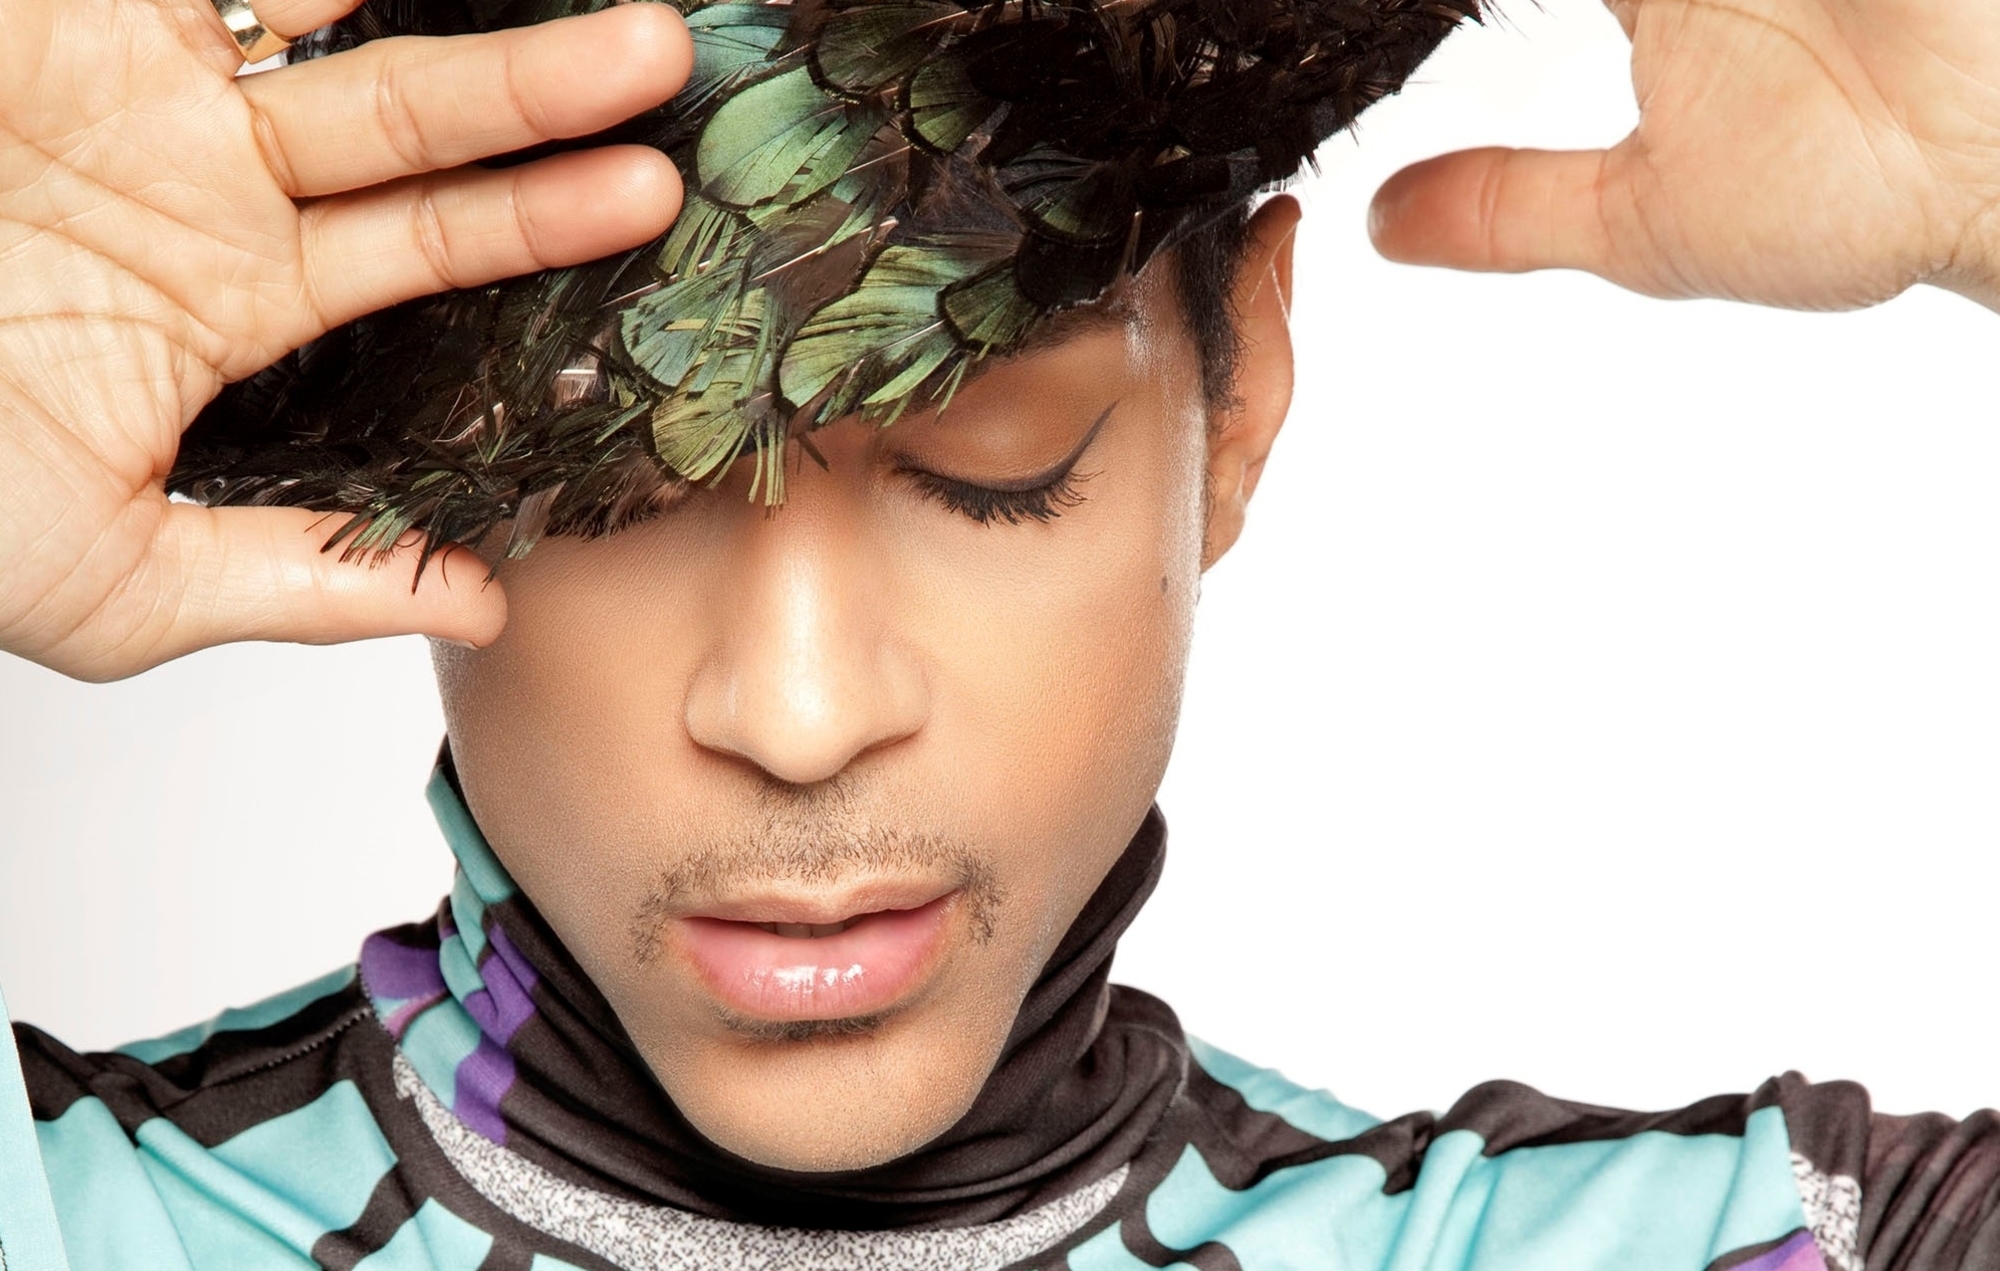 Prince Estate vende casi la mitad de los derechos del cantante fallecido a un editor de música de Nueva York